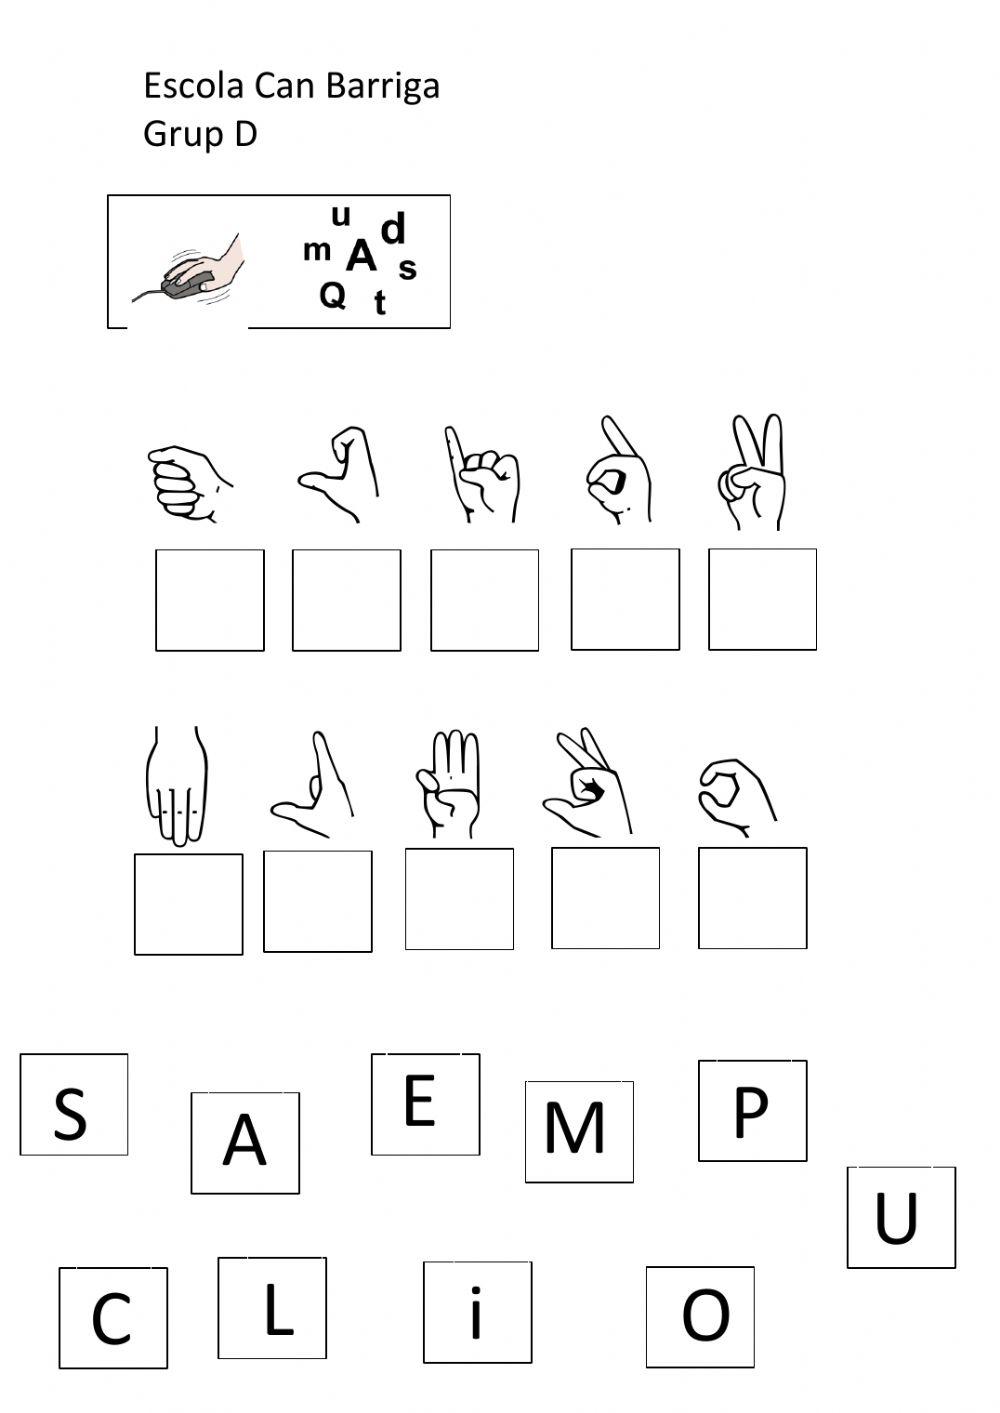 Llengua de signes